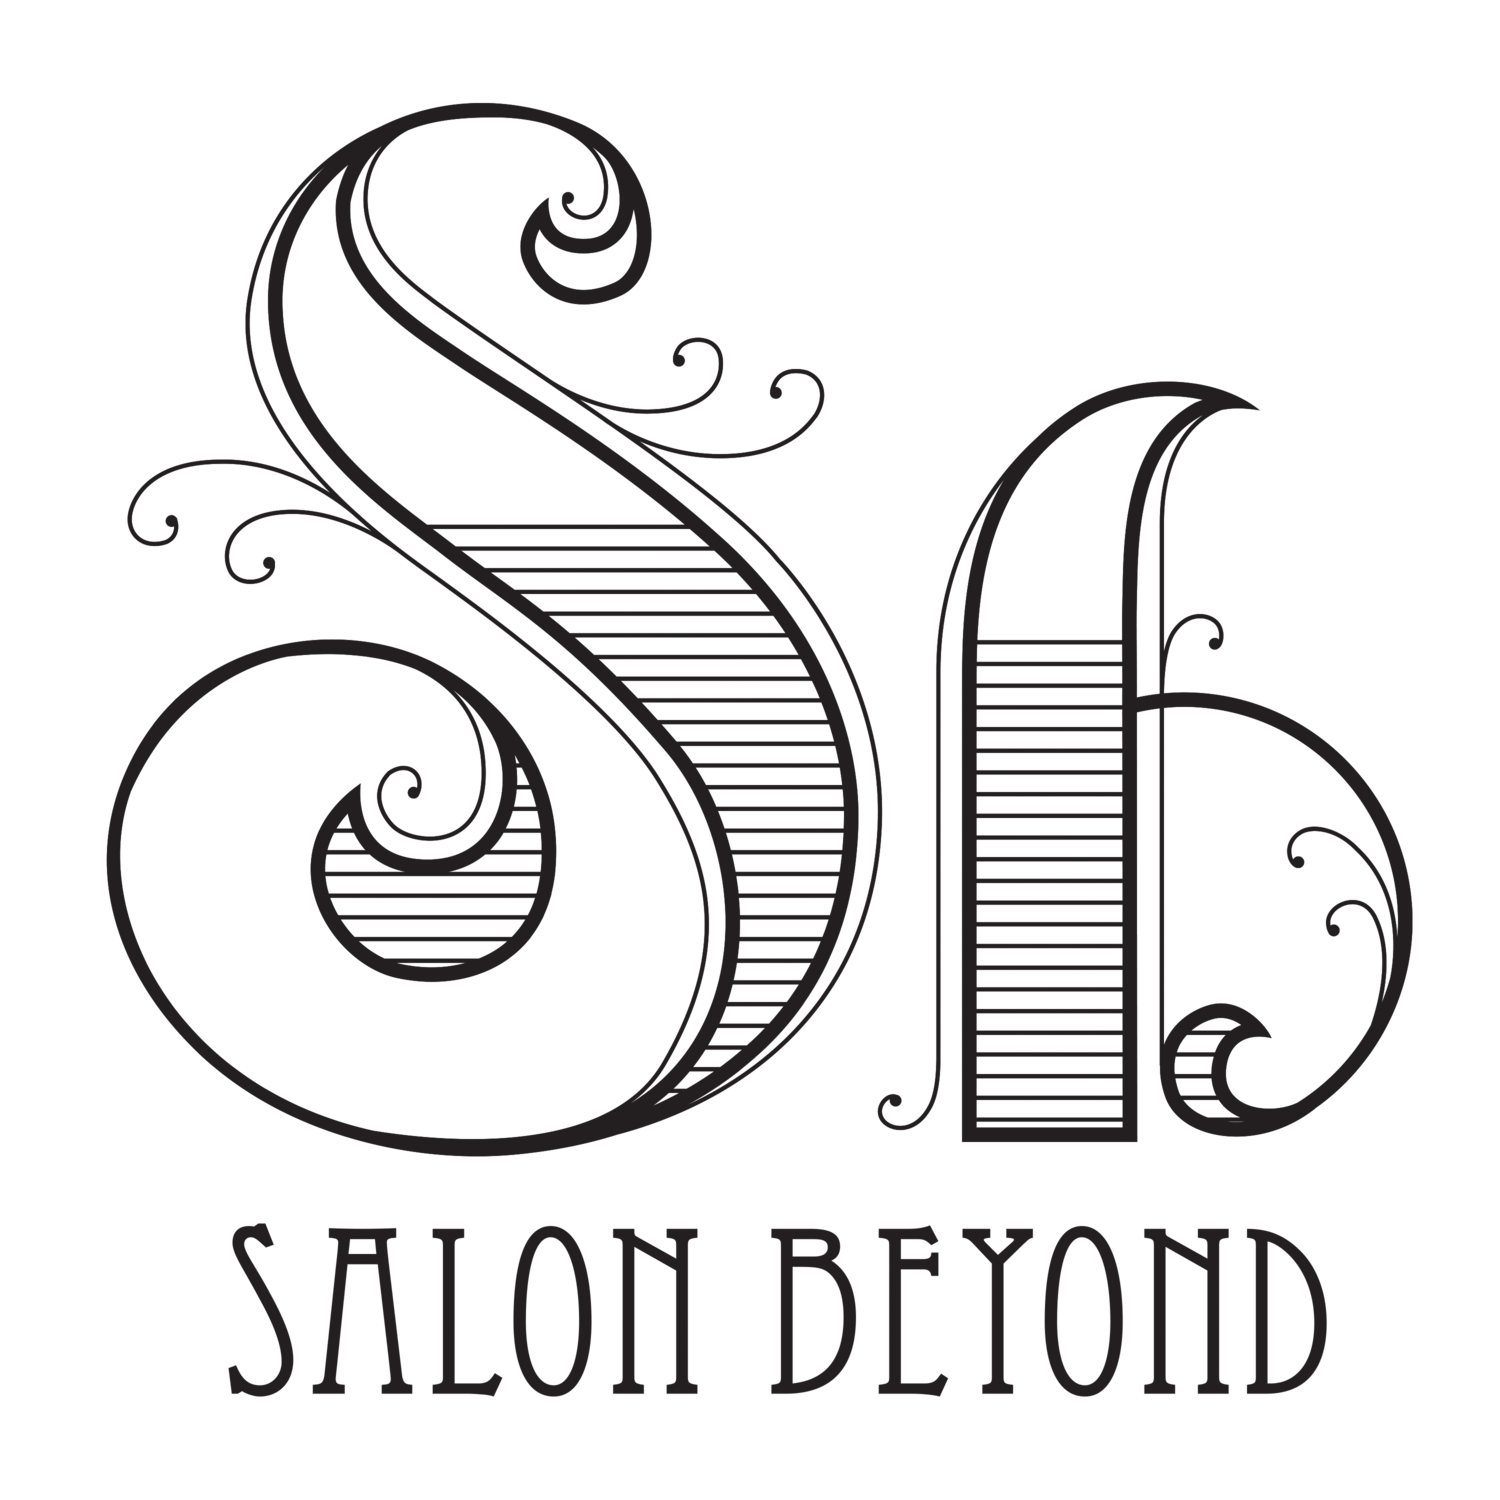 Salon Beyond